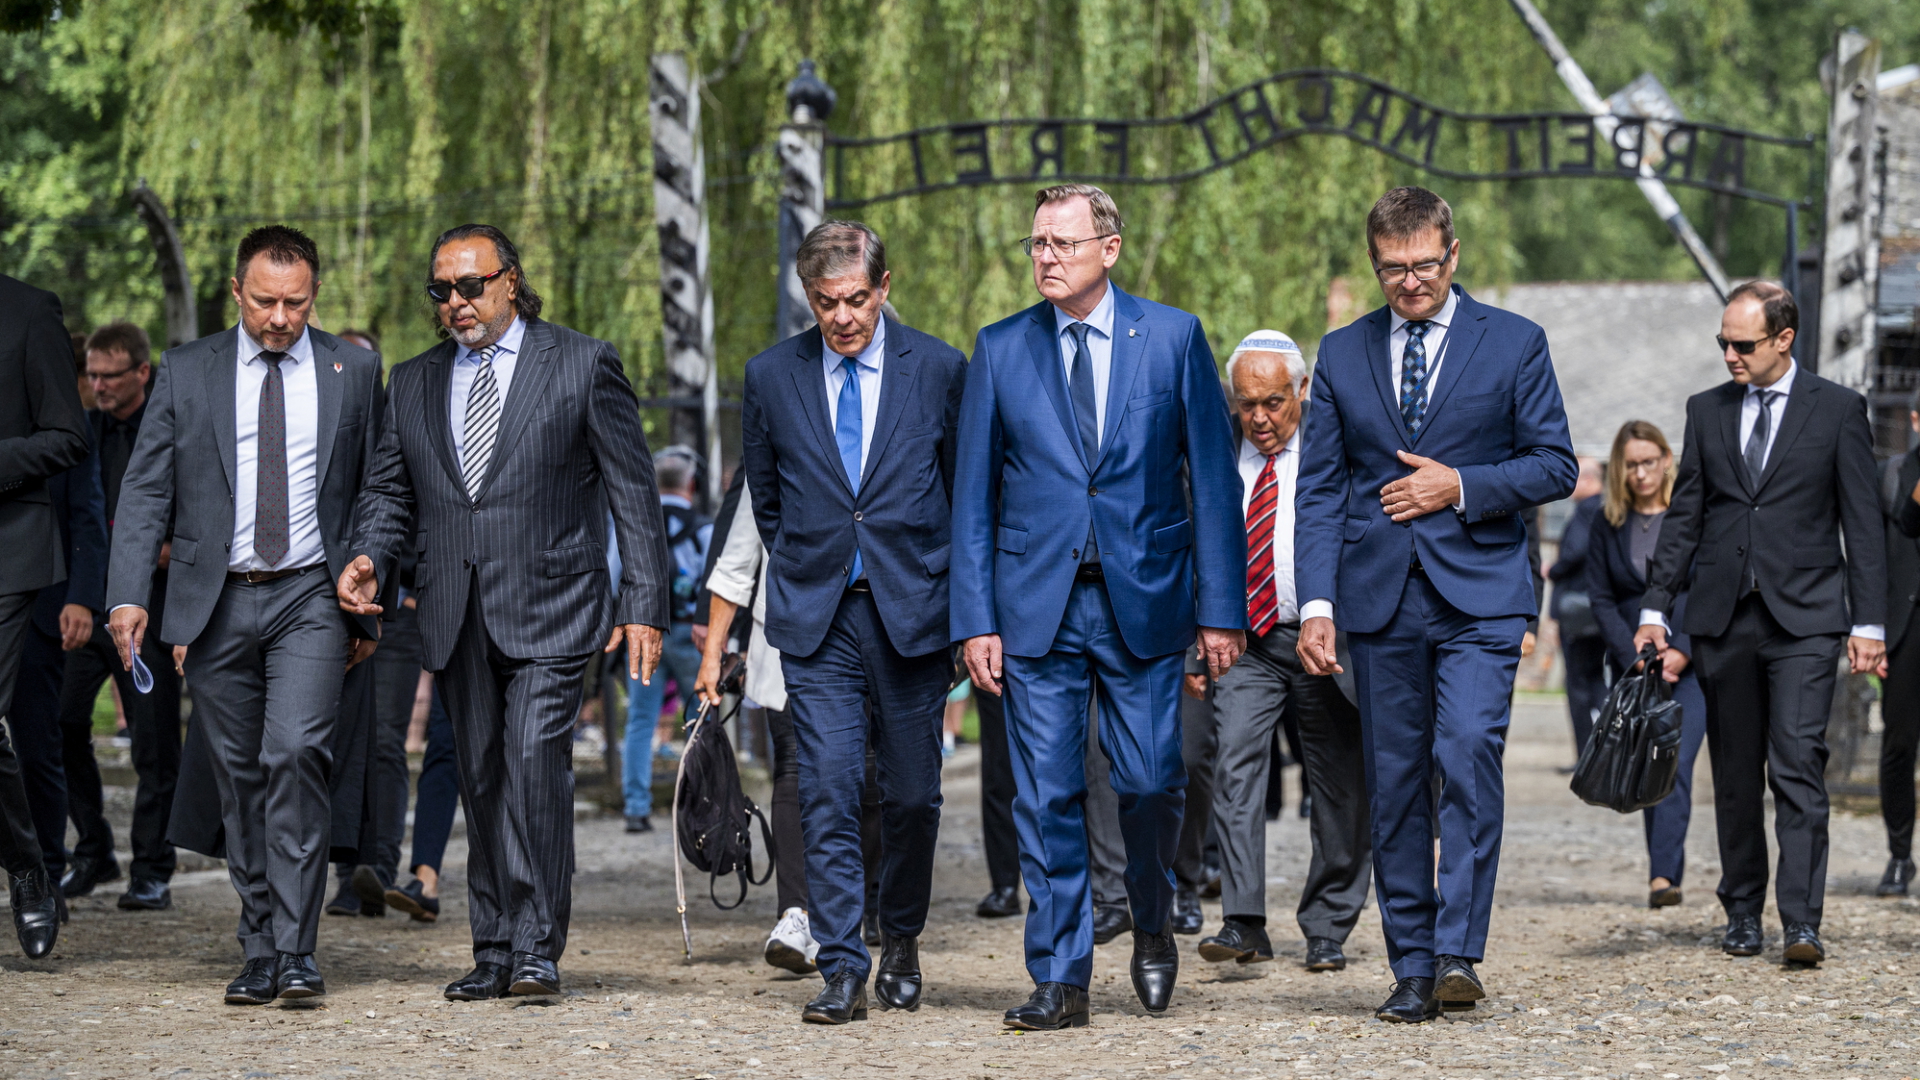  Bundesratspräsident Bodo Ramelow geht in die Gedenkstätte Auschwitz-Birkenau | dpa